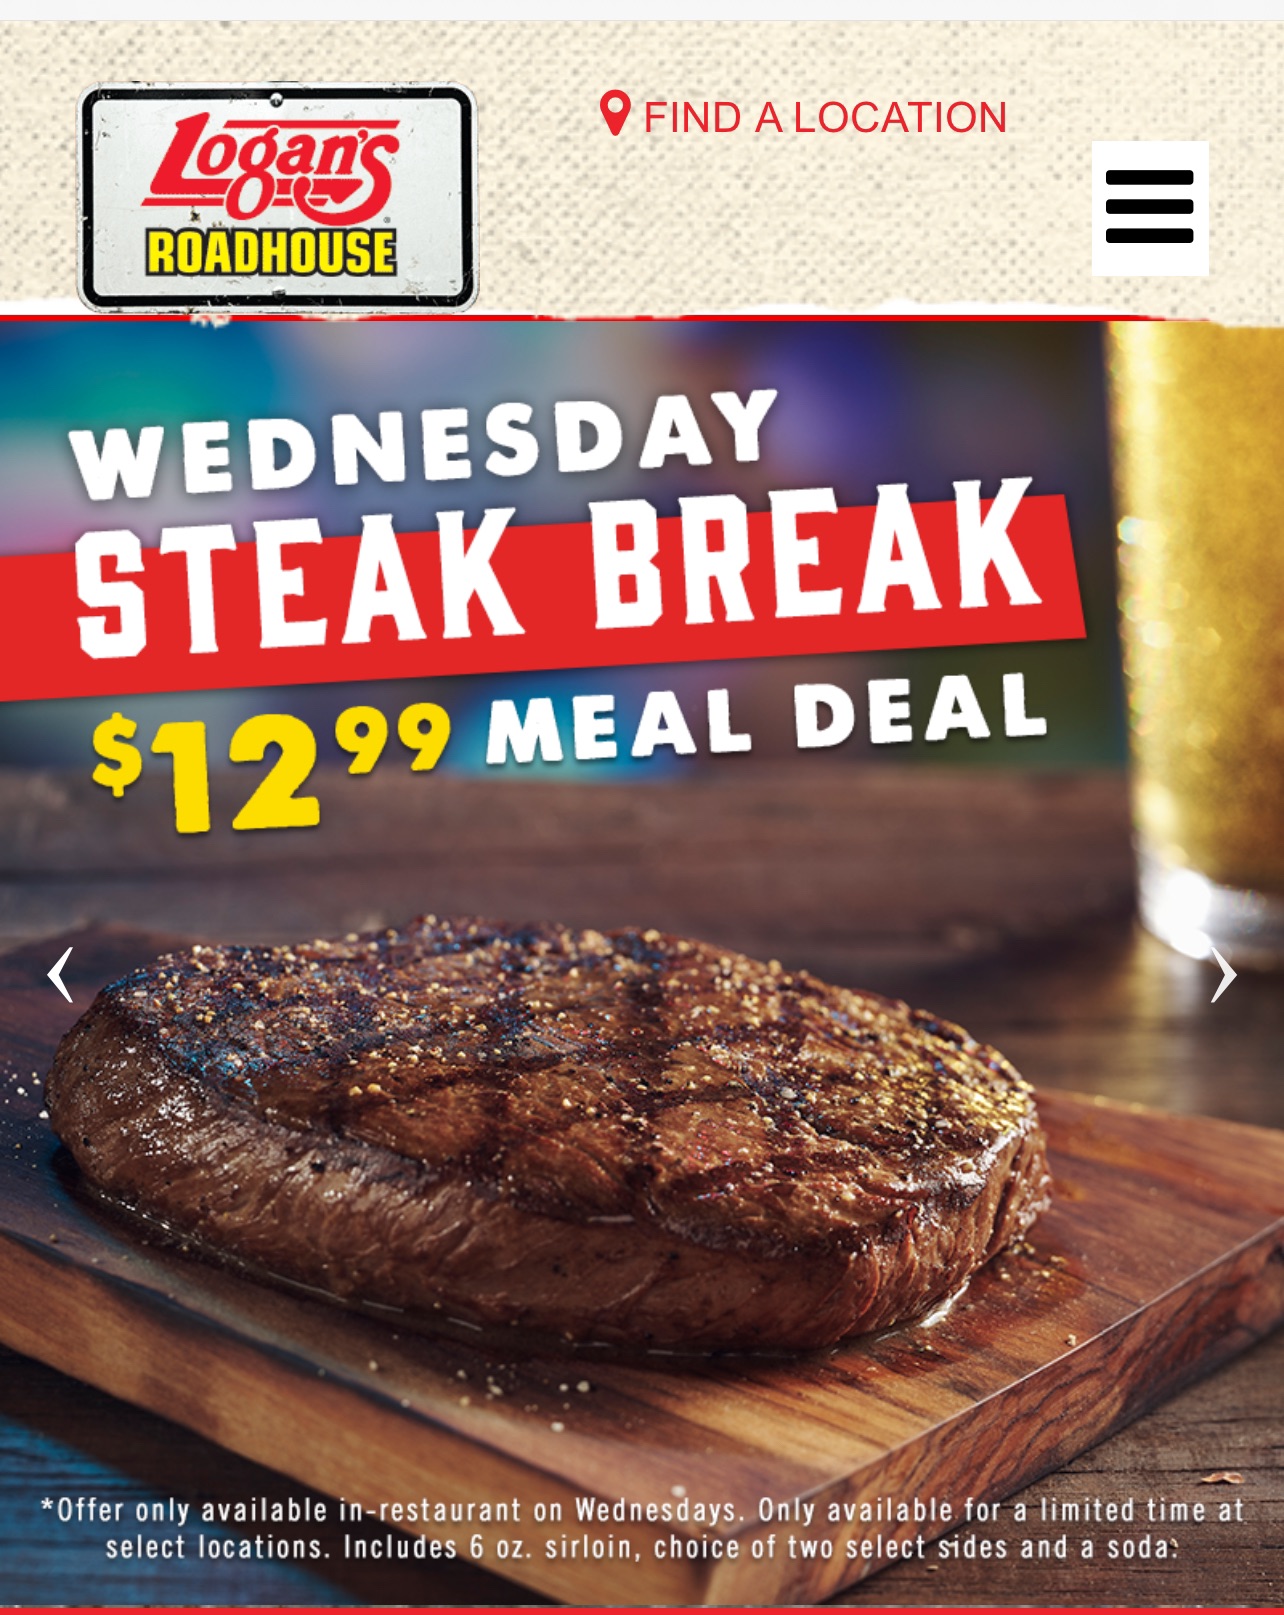 Logan's Roadhouse Steak Break $12.99 Meal Deal